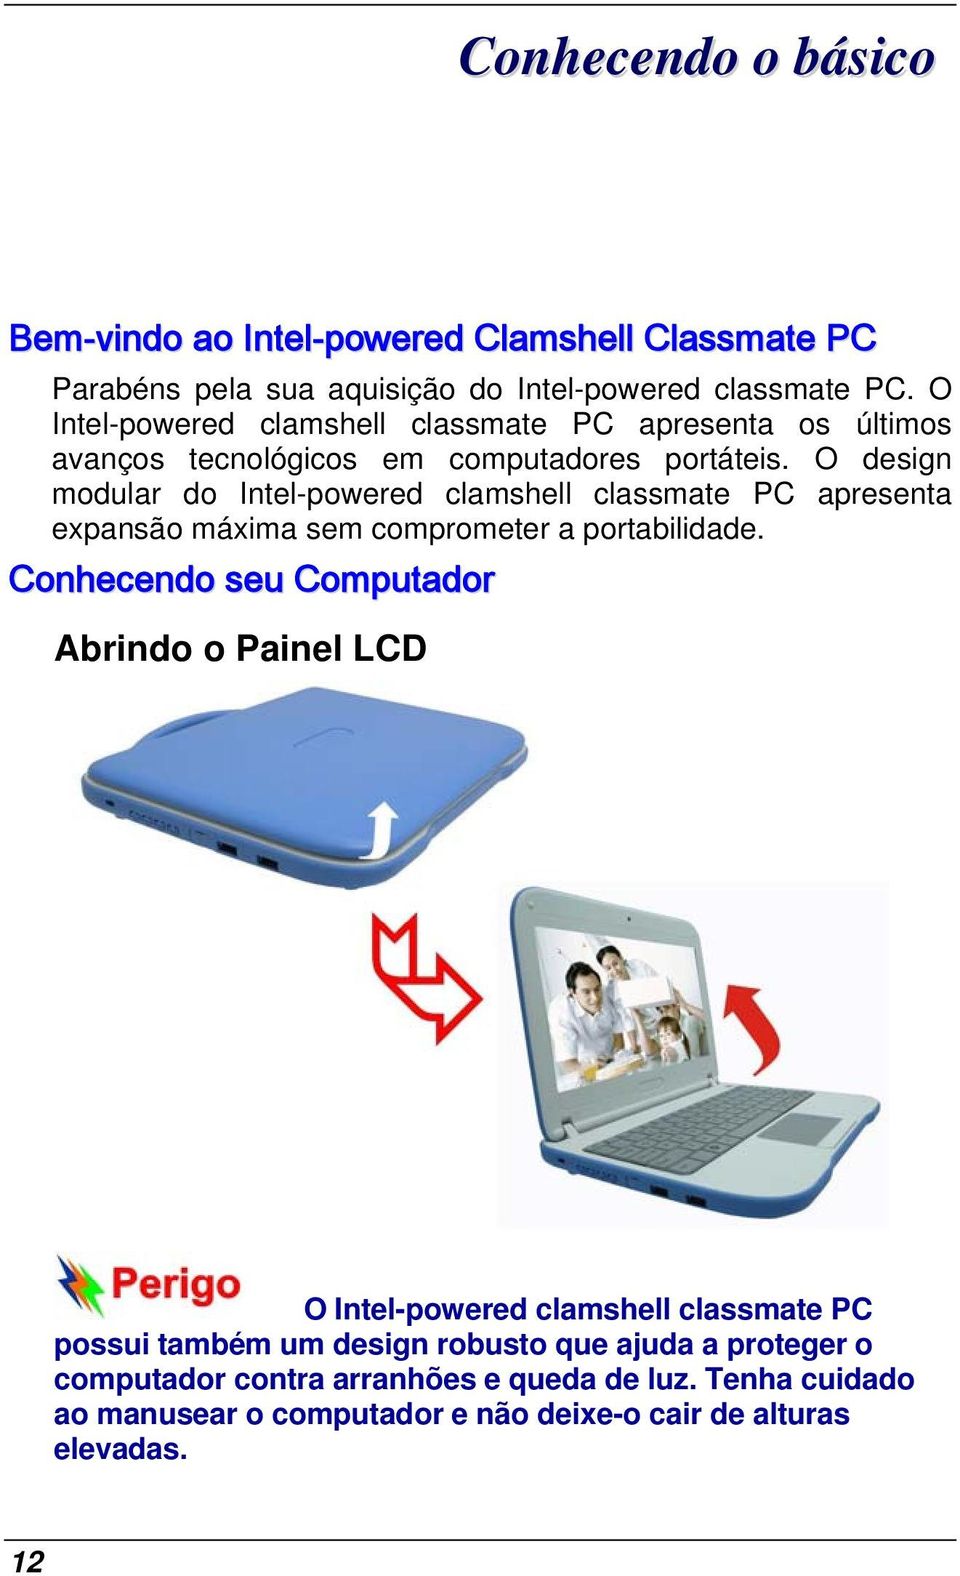 O design modular do Intel-powered clamshell classmate PC apresenta expansão máxima sem comprometer a portabilidade.